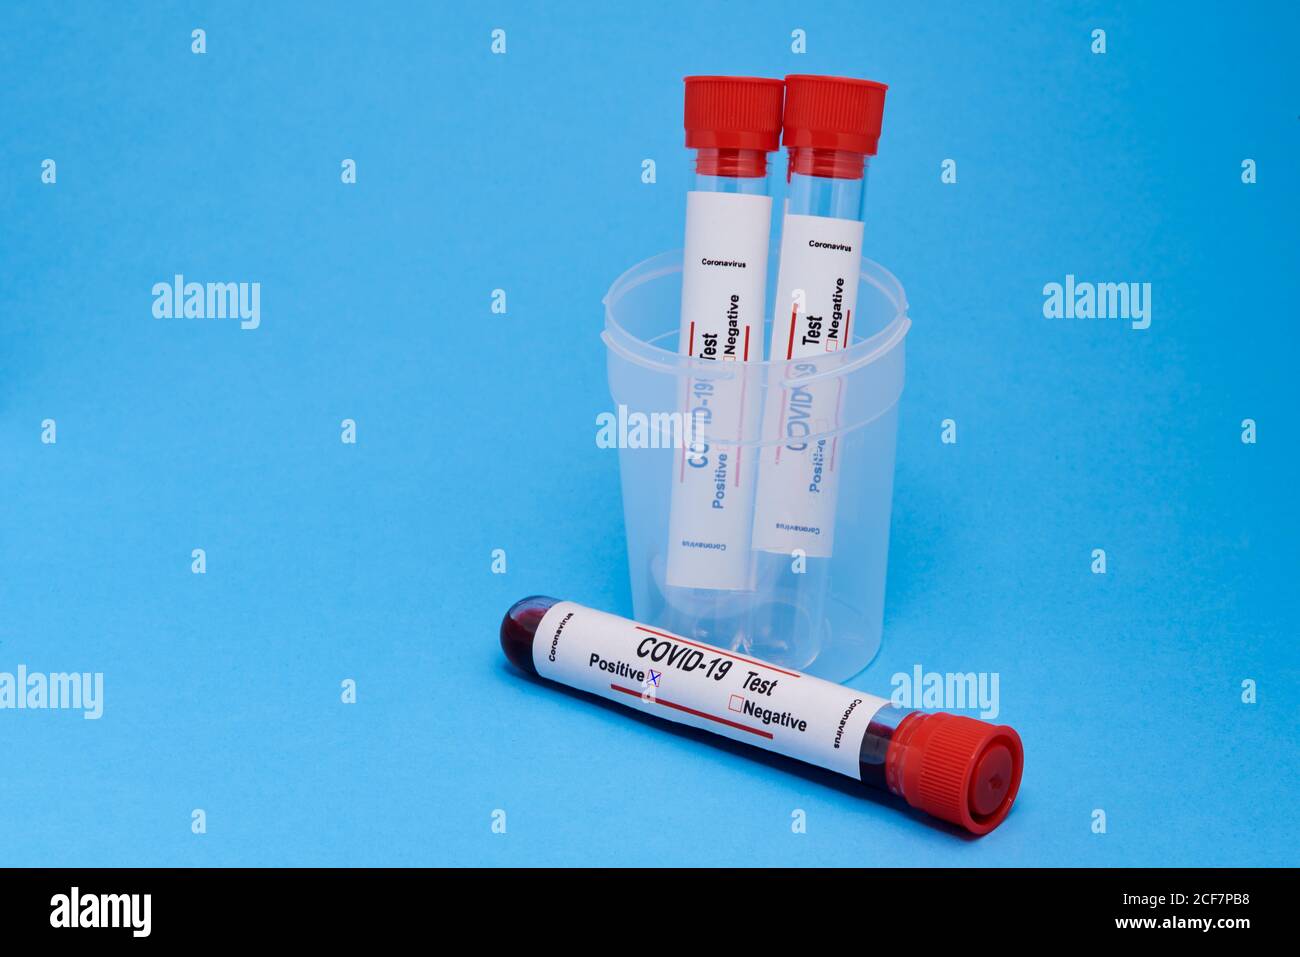 Dalla parte superiore, la provetta per analisi con i campioni di sangue nella provetta coppa in plastica per test diagnostico del coronavirus con contrassegno positivo su sfondo blu Foto Stock